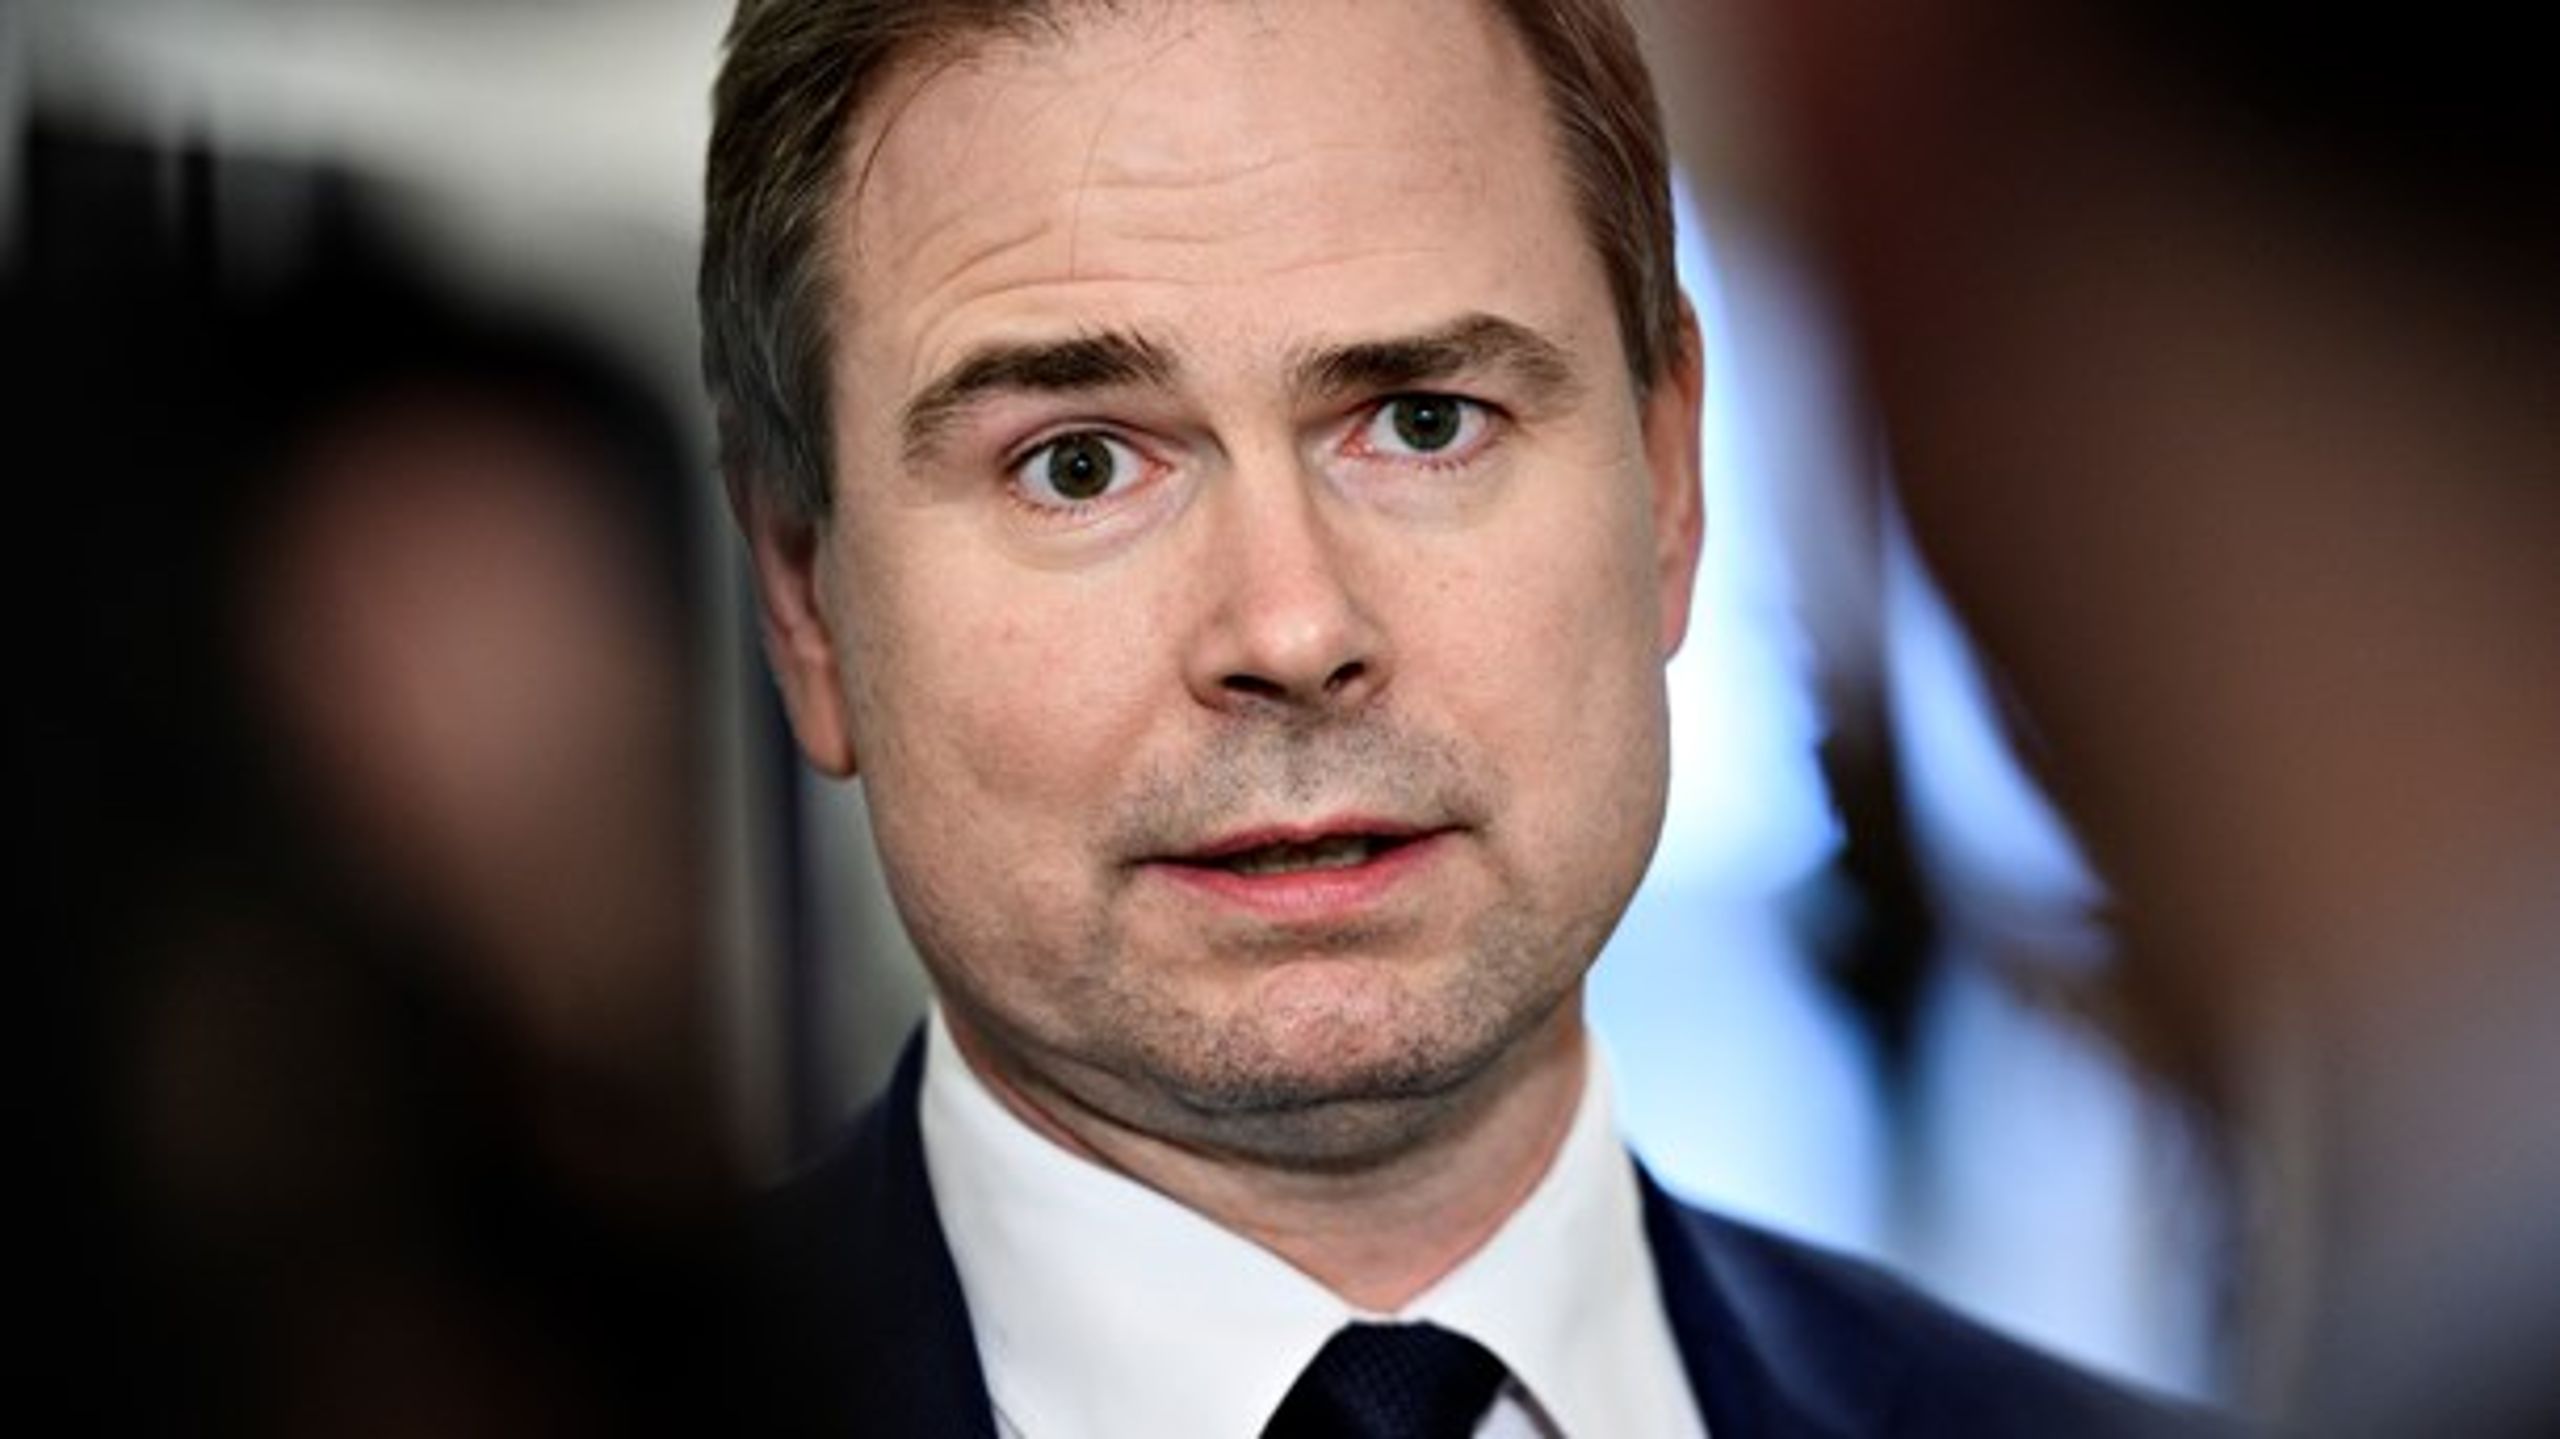 Finansminister Nicolai Wammen (S) fastslår, at regeringen er parat til at forlænge dele af hjælpepakkerne. Regeringen har indkaldt arbejdsmarkedets parter til nye trepartsforhandlinger.